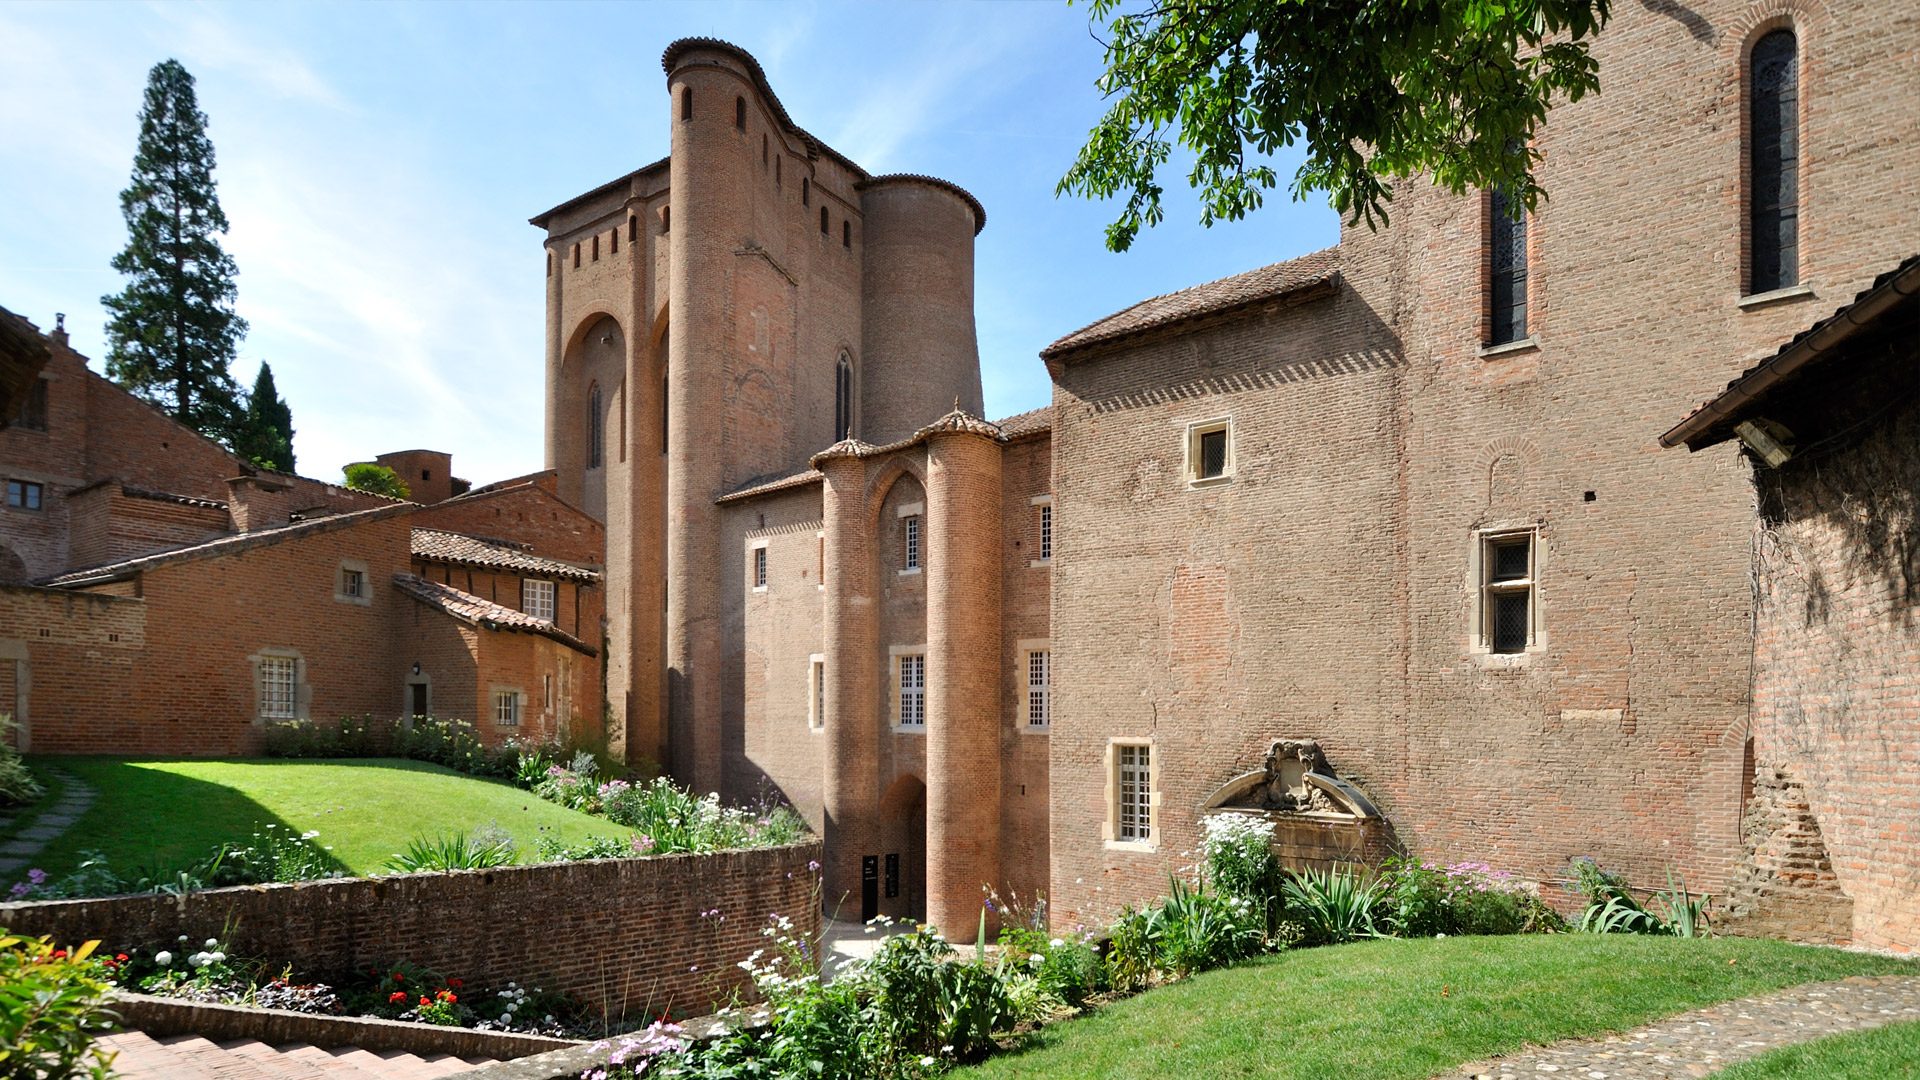 Het Berbie-paleis, voormalige bisschoppelijke residentie. Vandaag een etalage voor het Toulouse-Lautrec museum